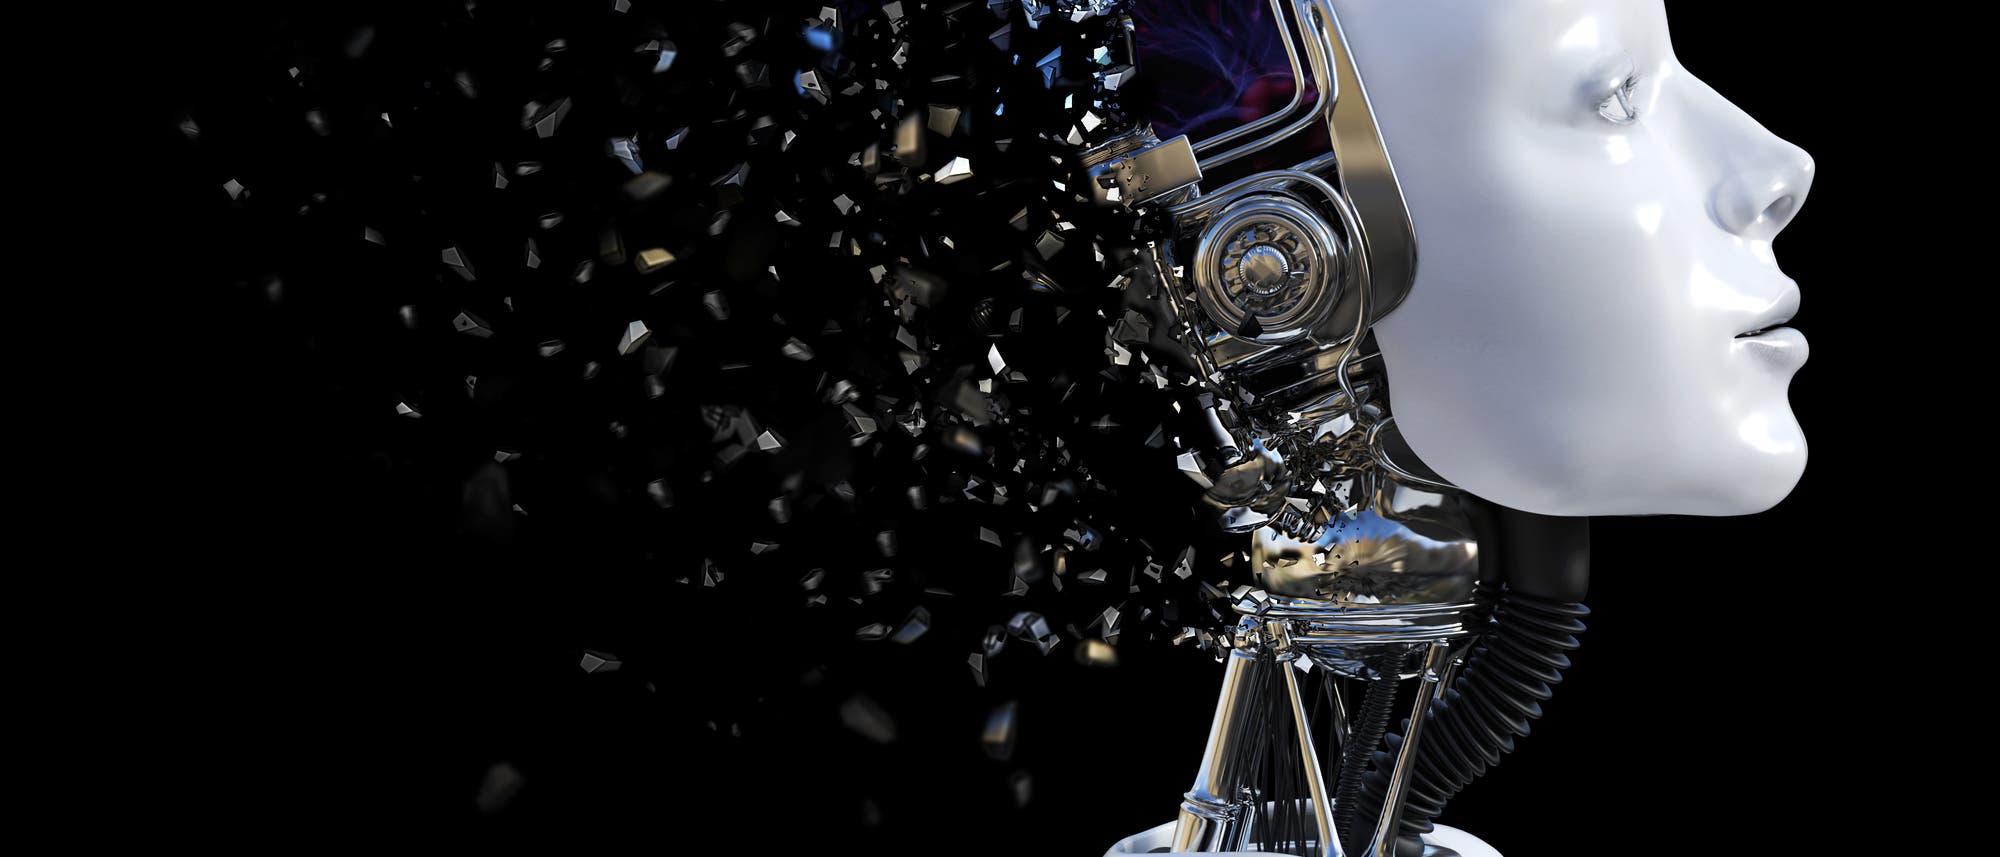 Symbolbild Künstliche Intelligenz: Ein weißer Roboter vor schwarzem Hintergrund mit menschlichem Gesicht, sein Hinterkopf löst sich in Splittern auf.